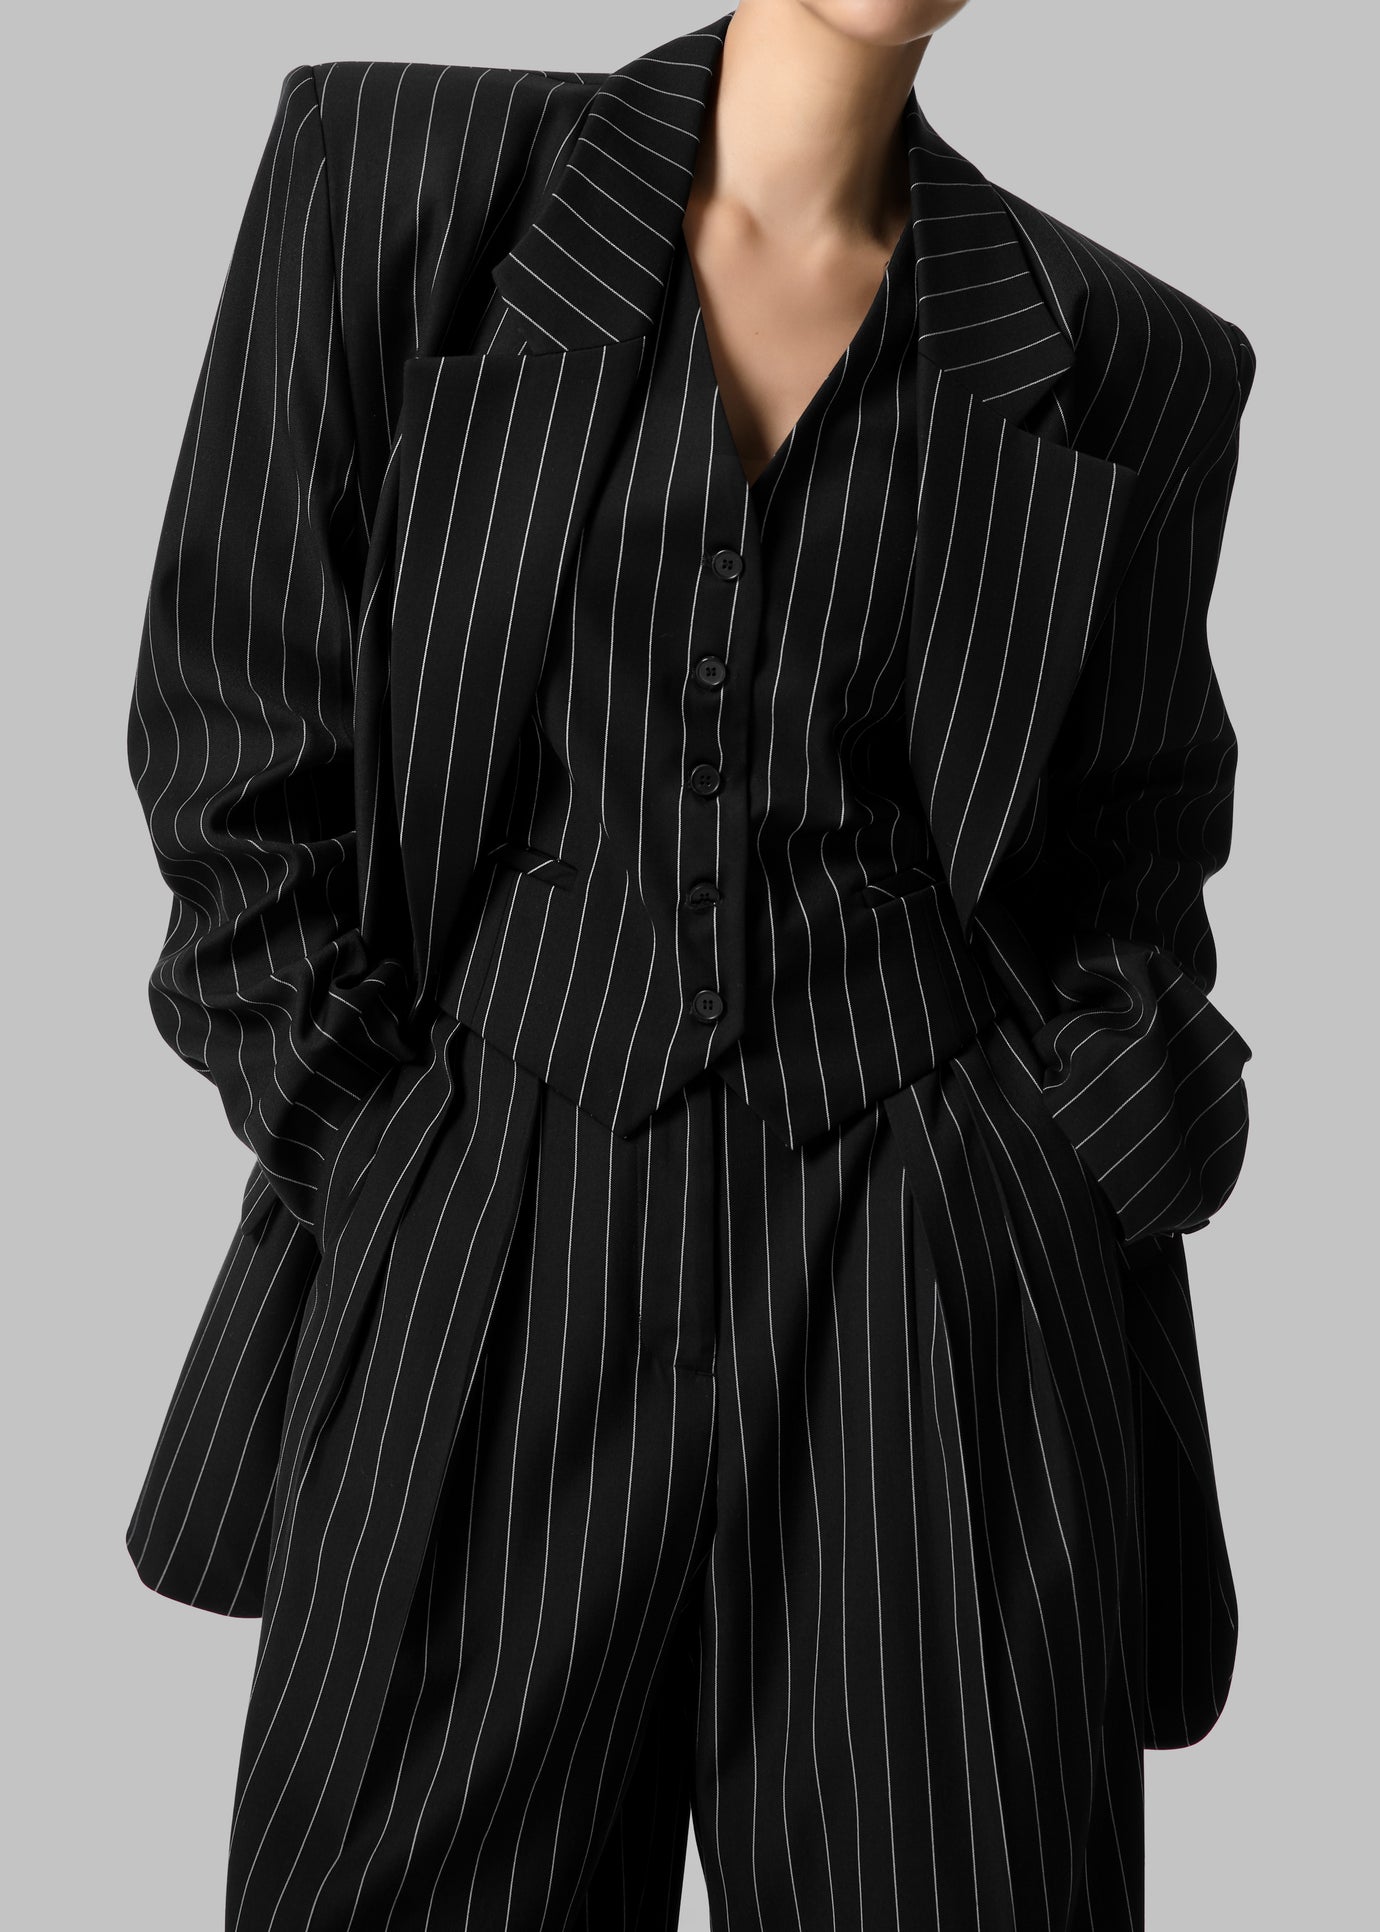 Holland Suit Vest - Black/White Pinstripe